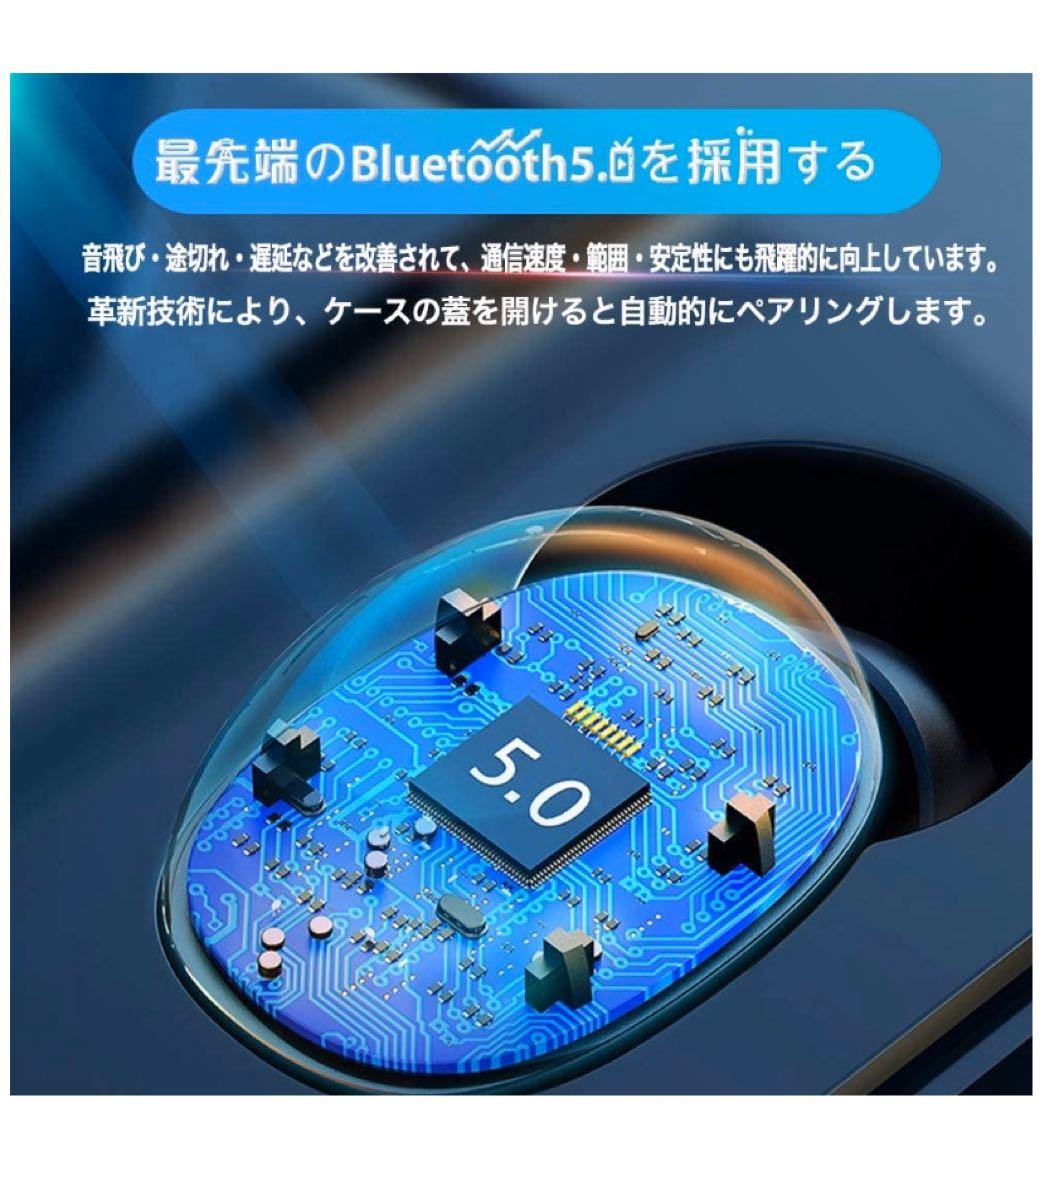 Bluetoothイヤホン Bluetooth5.0 高音質